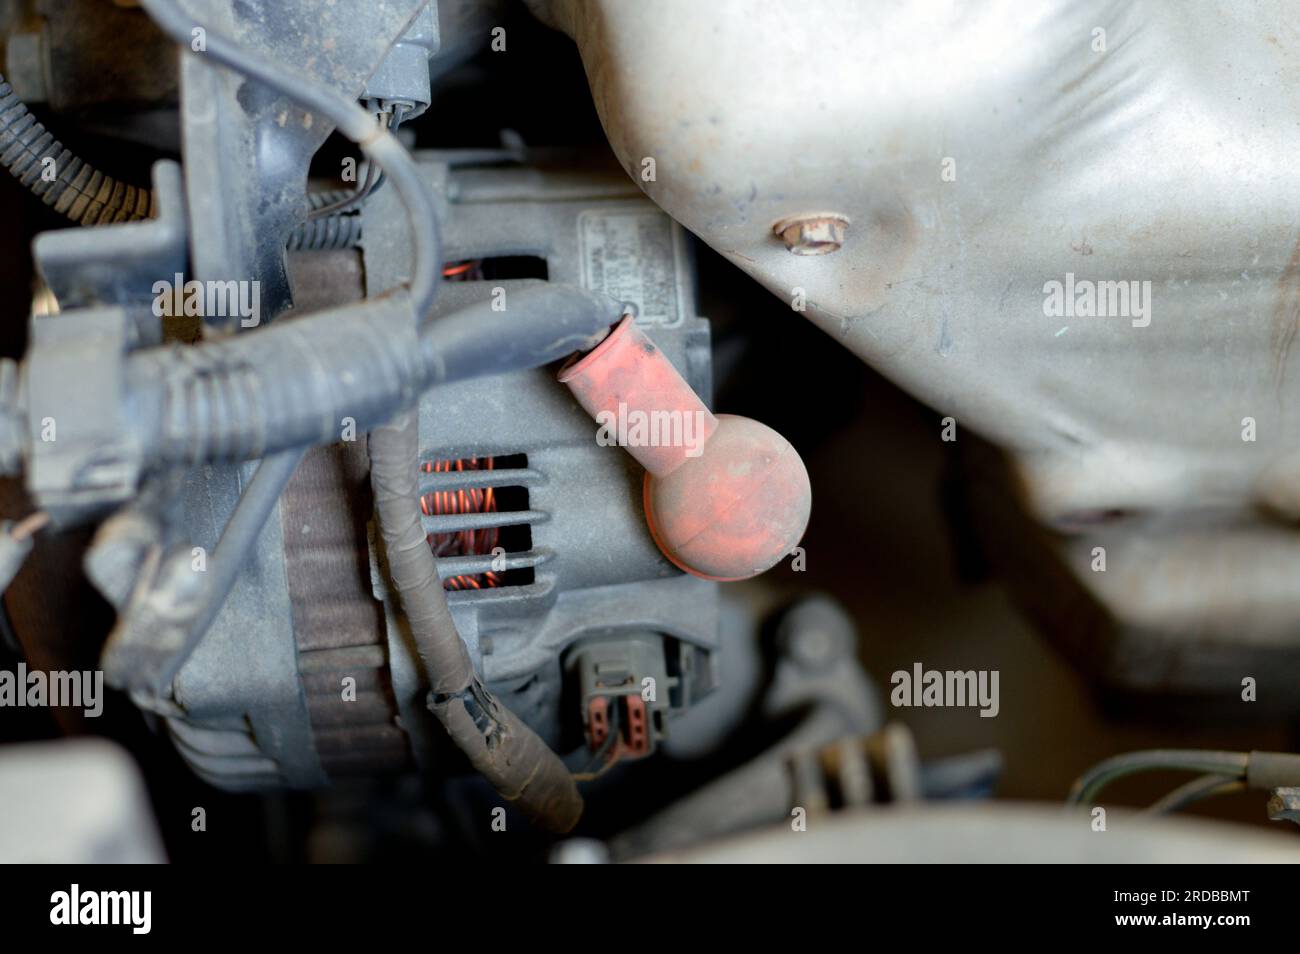 Cairo, Egitto, 24 giugno 2023: Manutenzione di auto Nissan, sostituzione di alcuni componenti auto come candele, servizio per radiatore, distributore Foto Stock